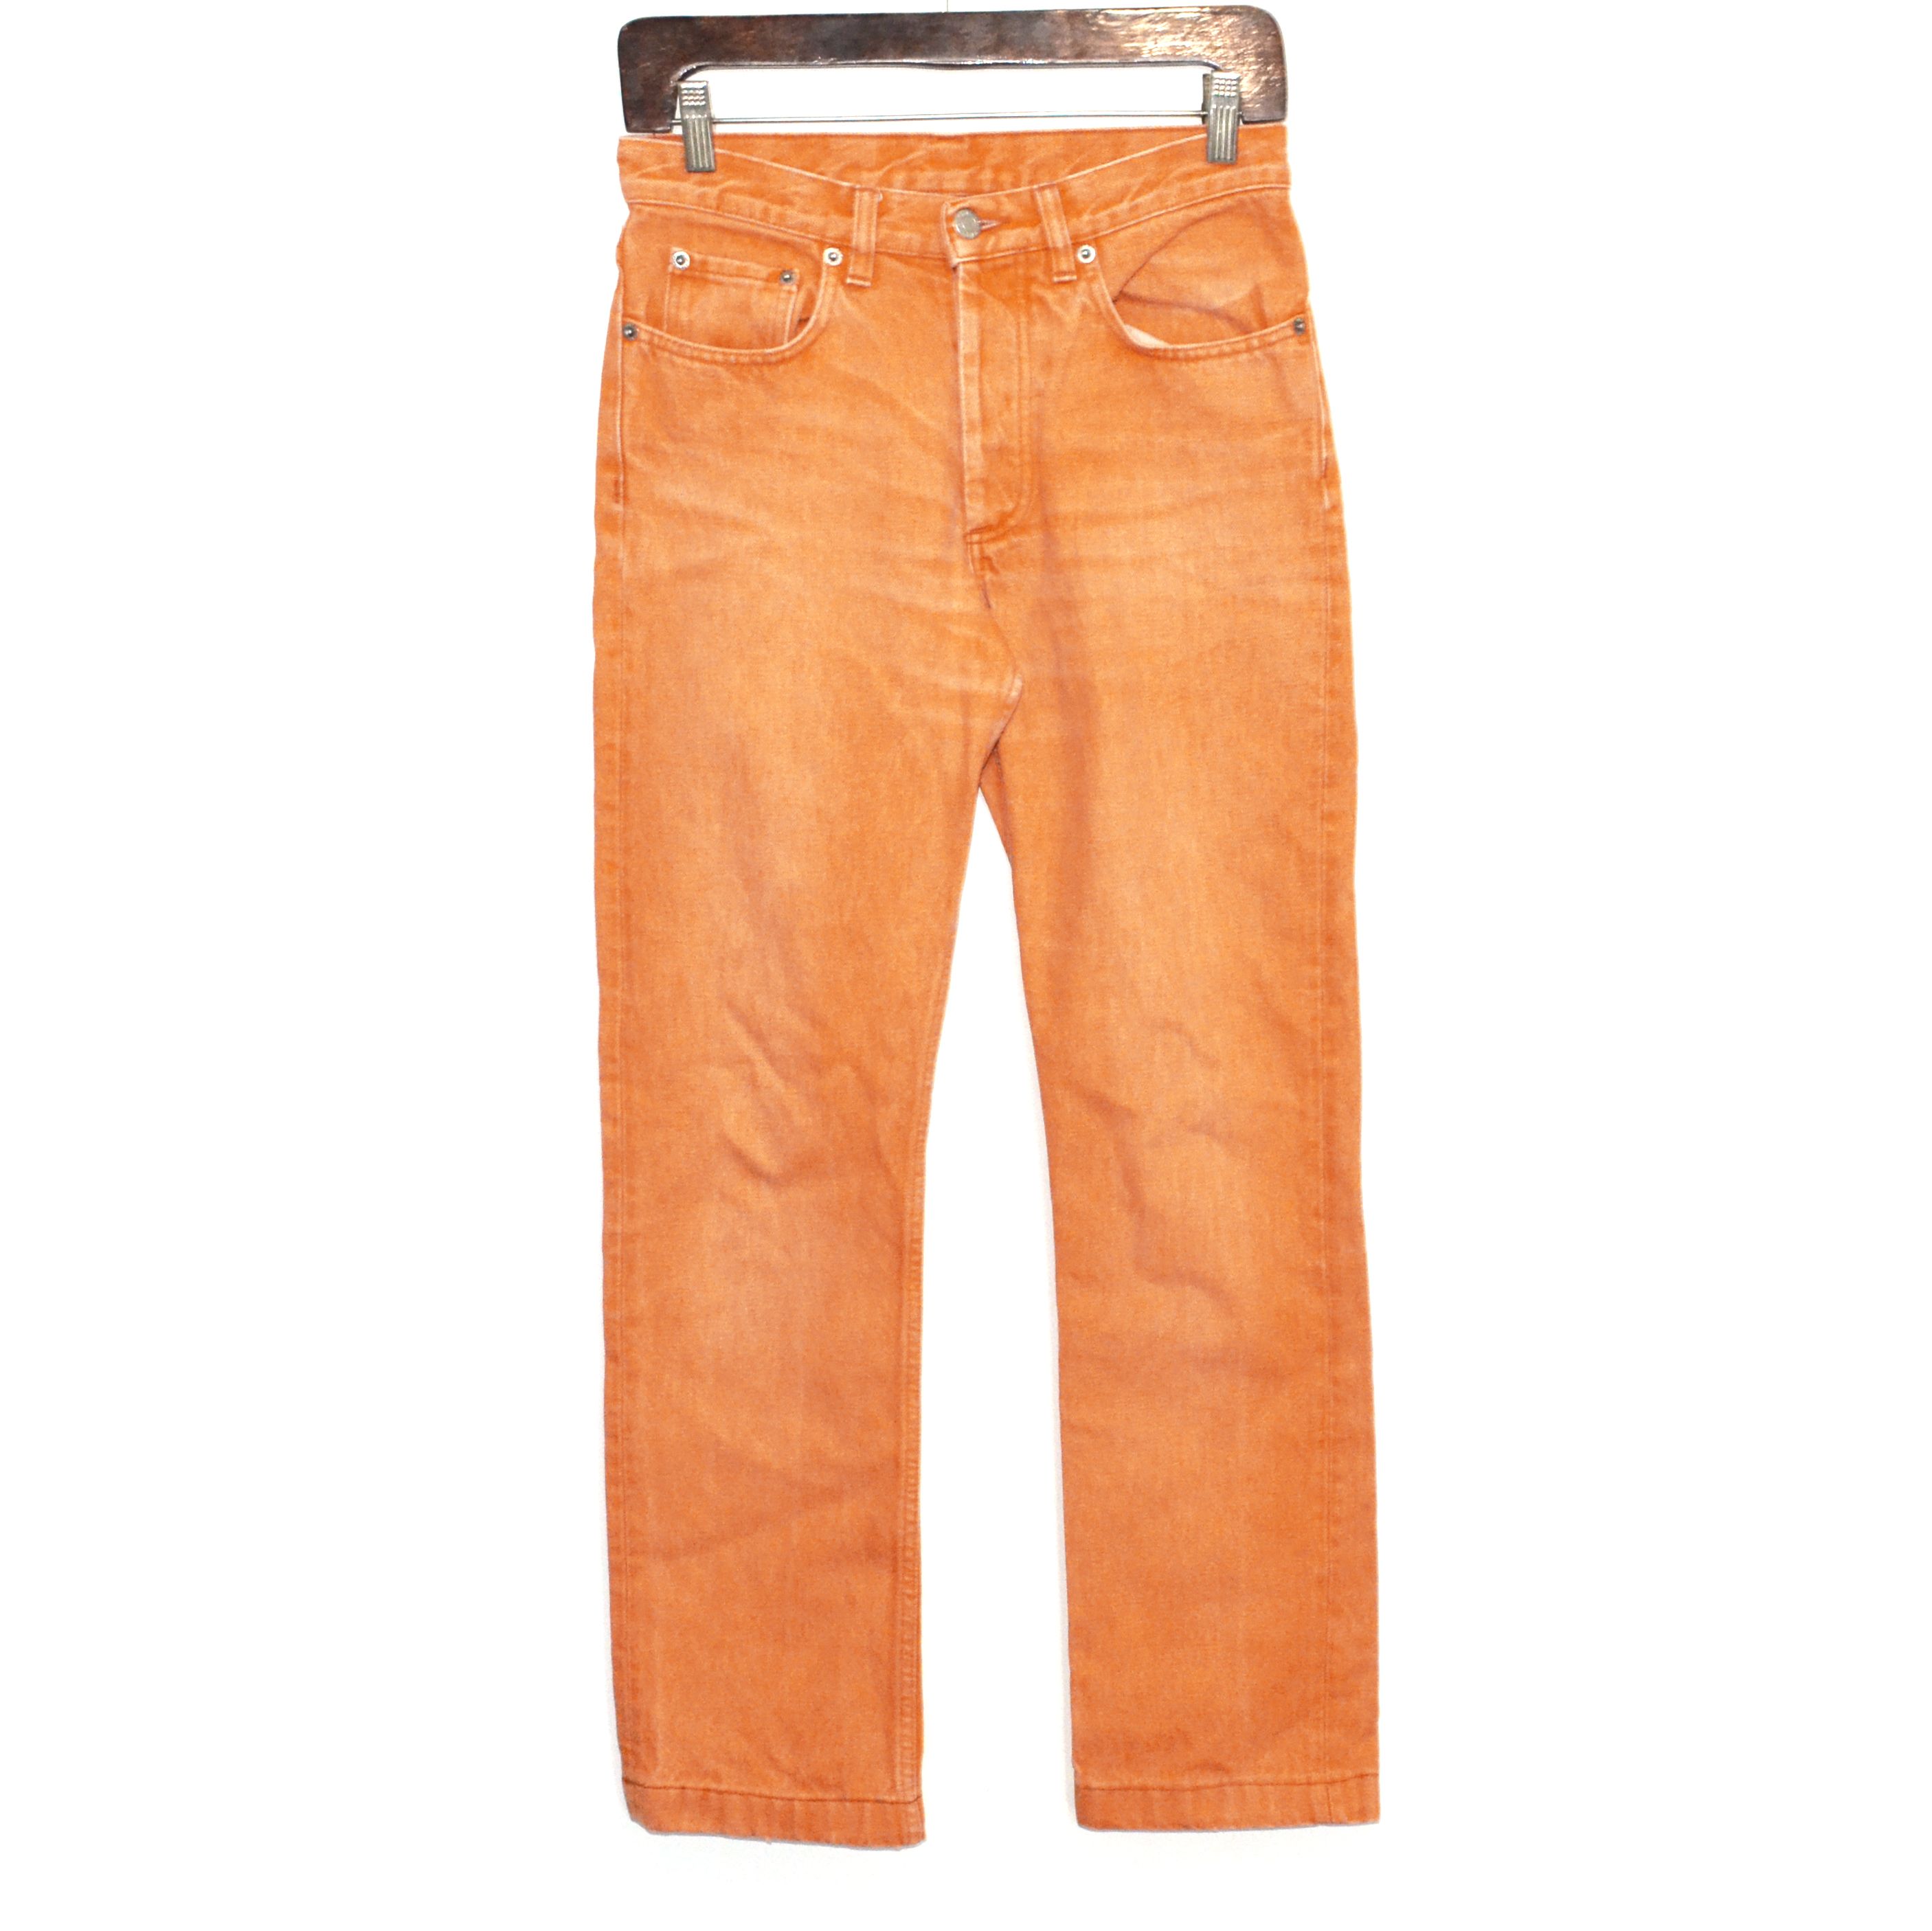 Vintage Helmut Lang Jeans Orange | Grailed